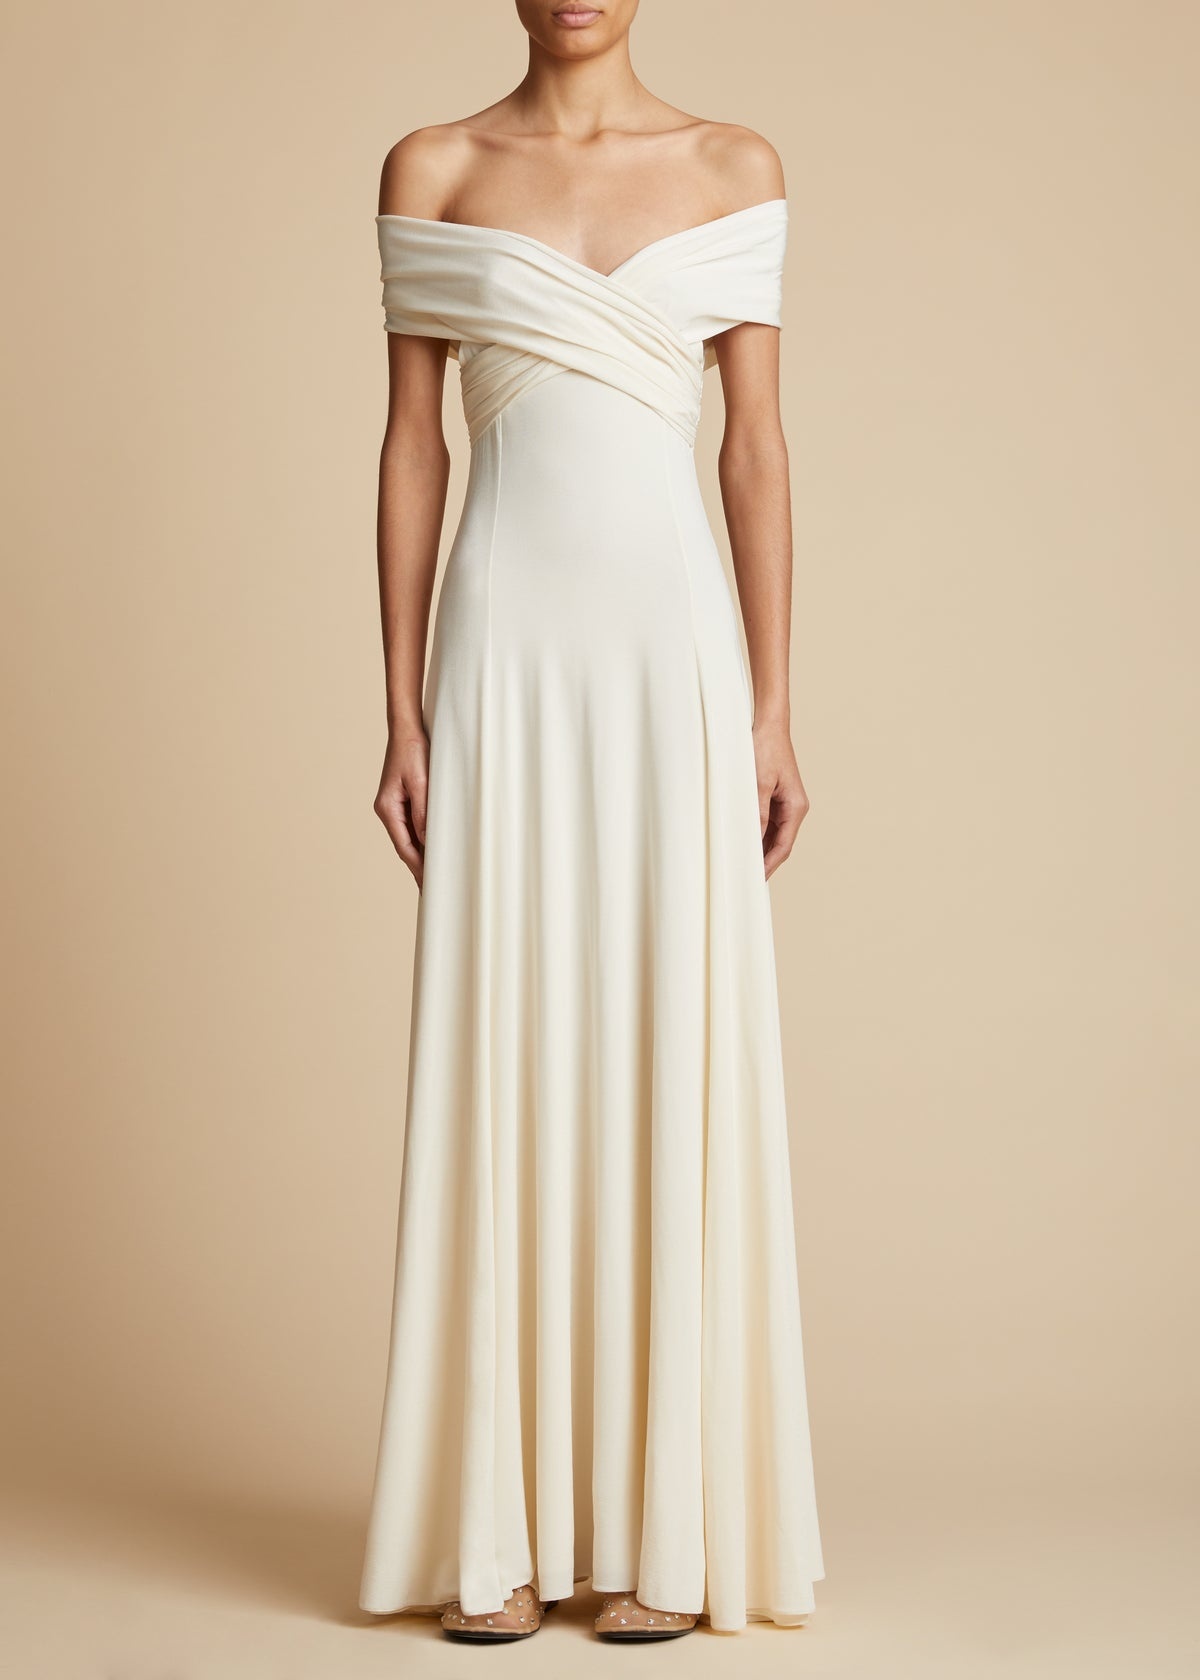 The Bruna Dress in Cream - 1